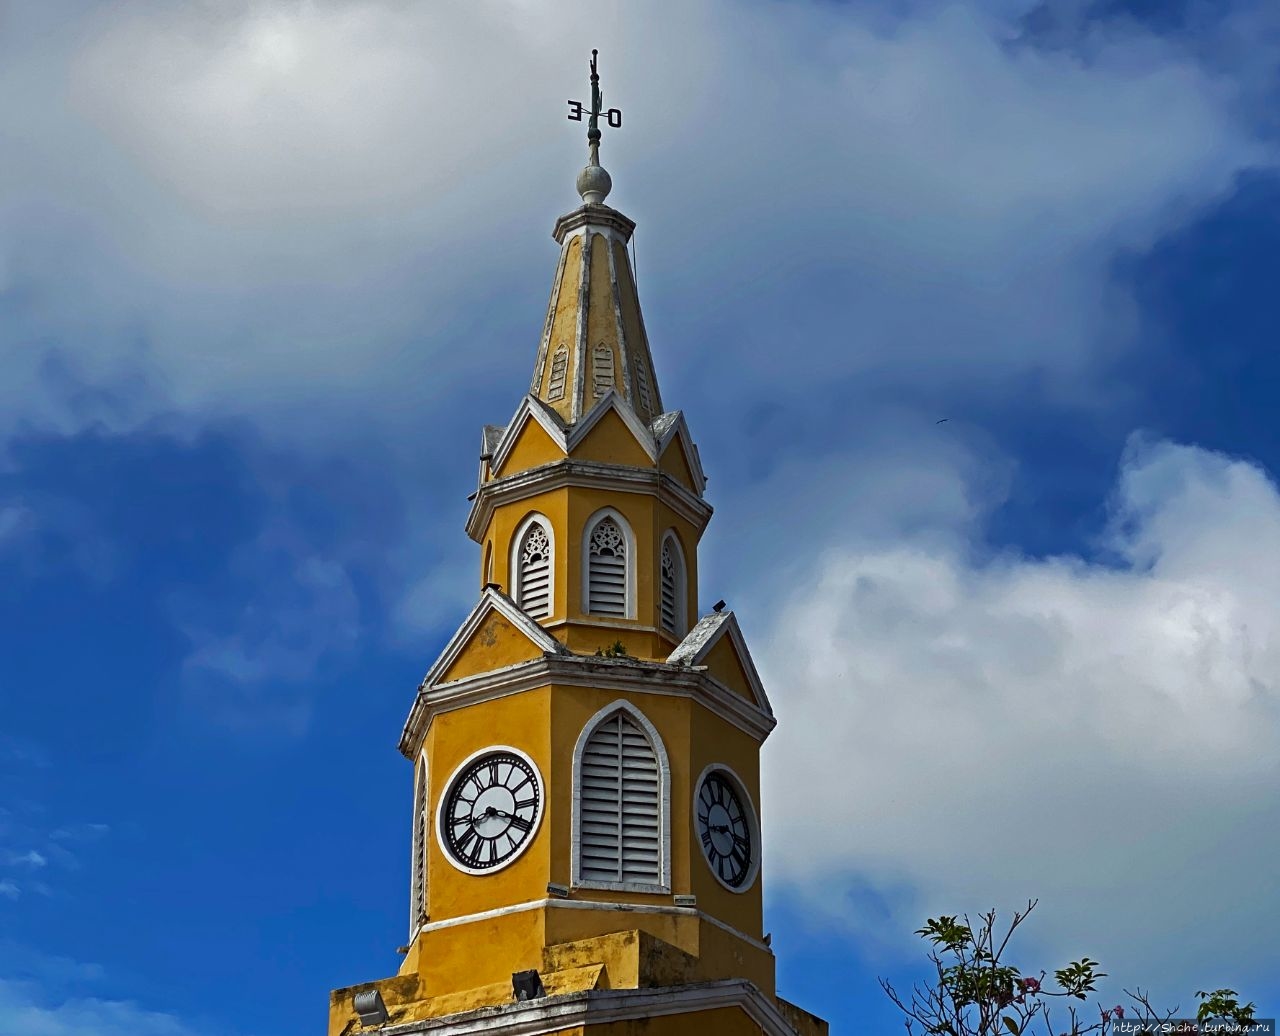 Часовая башня Картахена, Колумбия